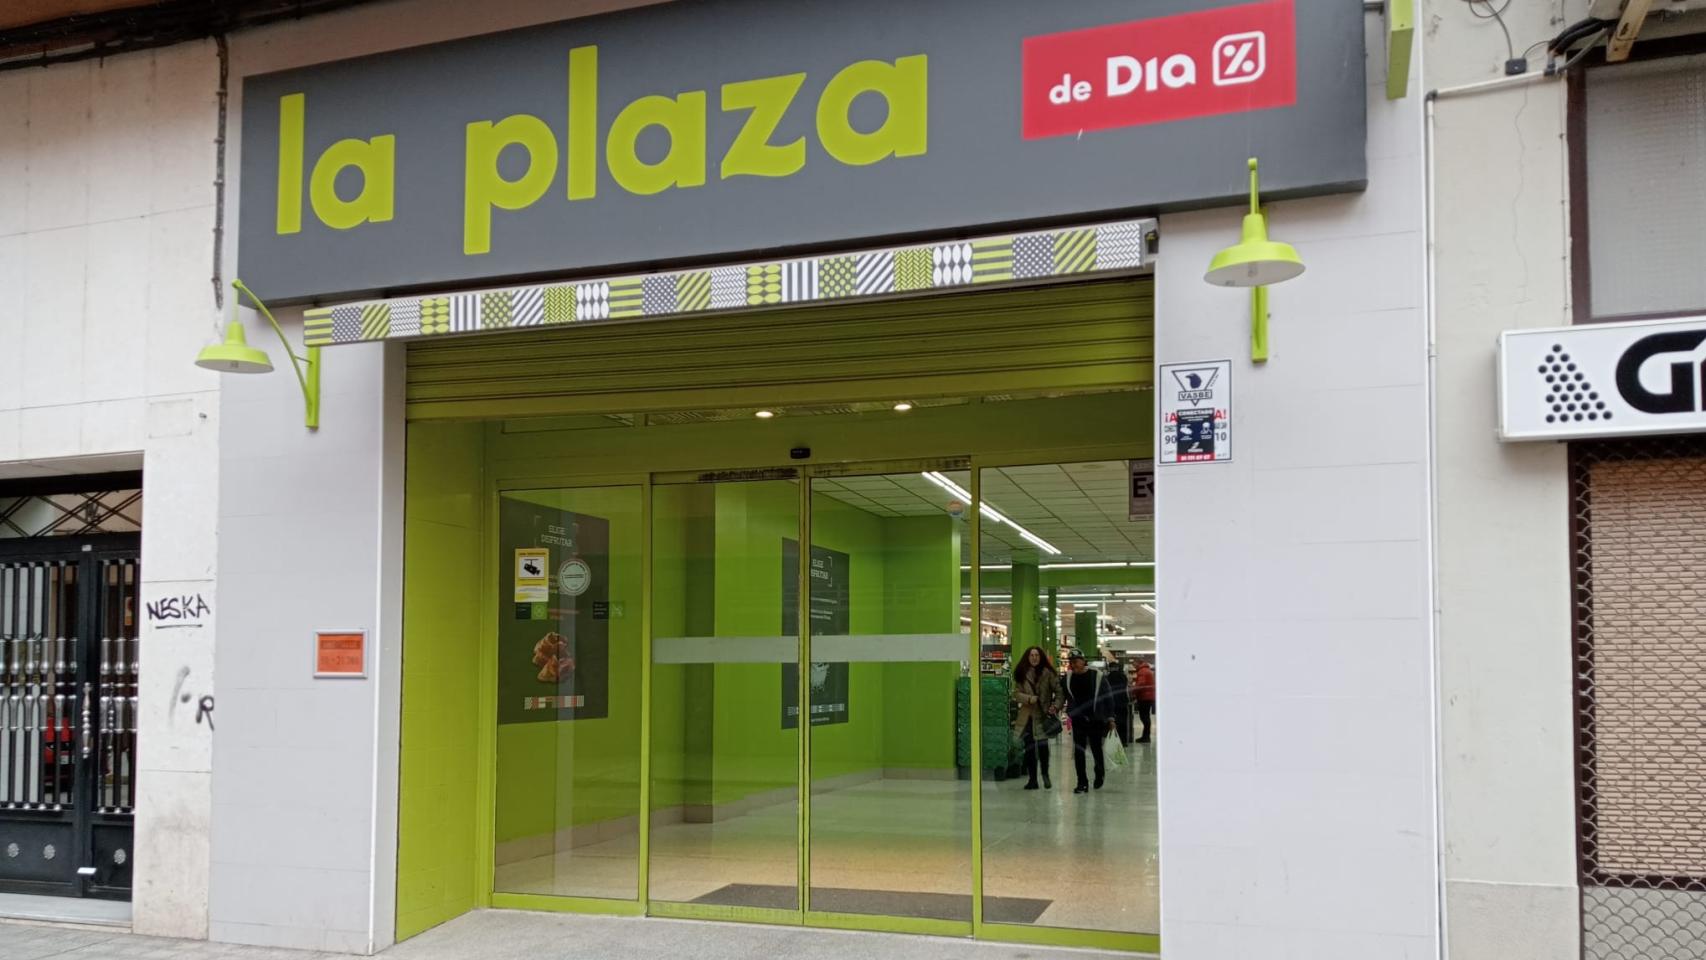 Estos son los supermercados DIA que Alcampo comprará en Zamora